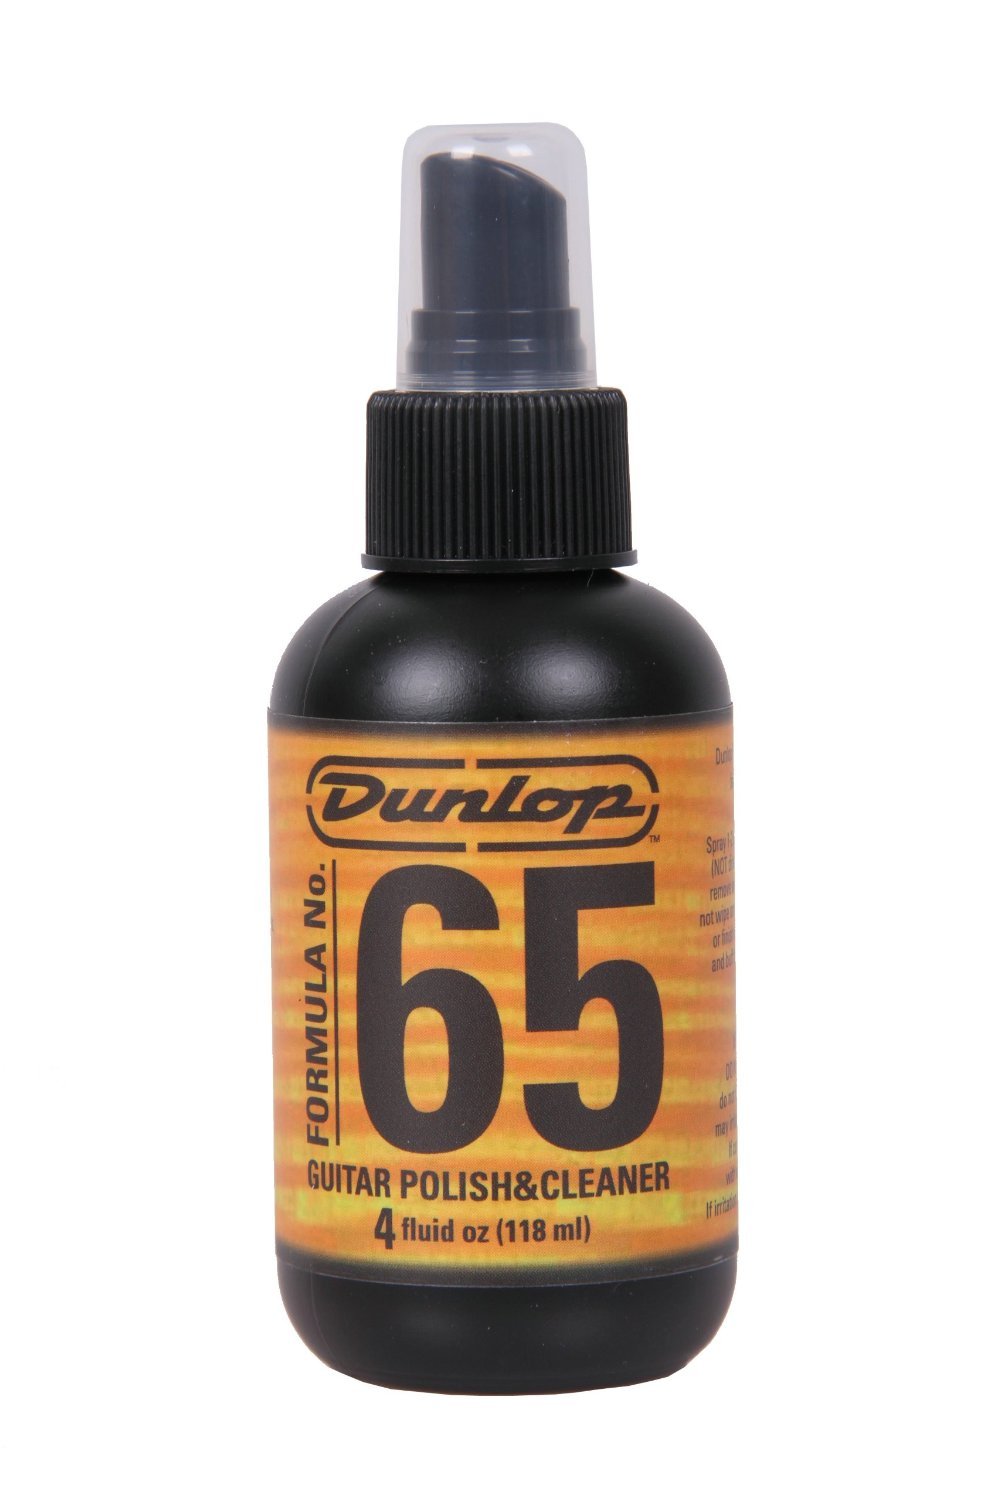 Dunlop Formula 65 - Guitar Polish & Cleaner